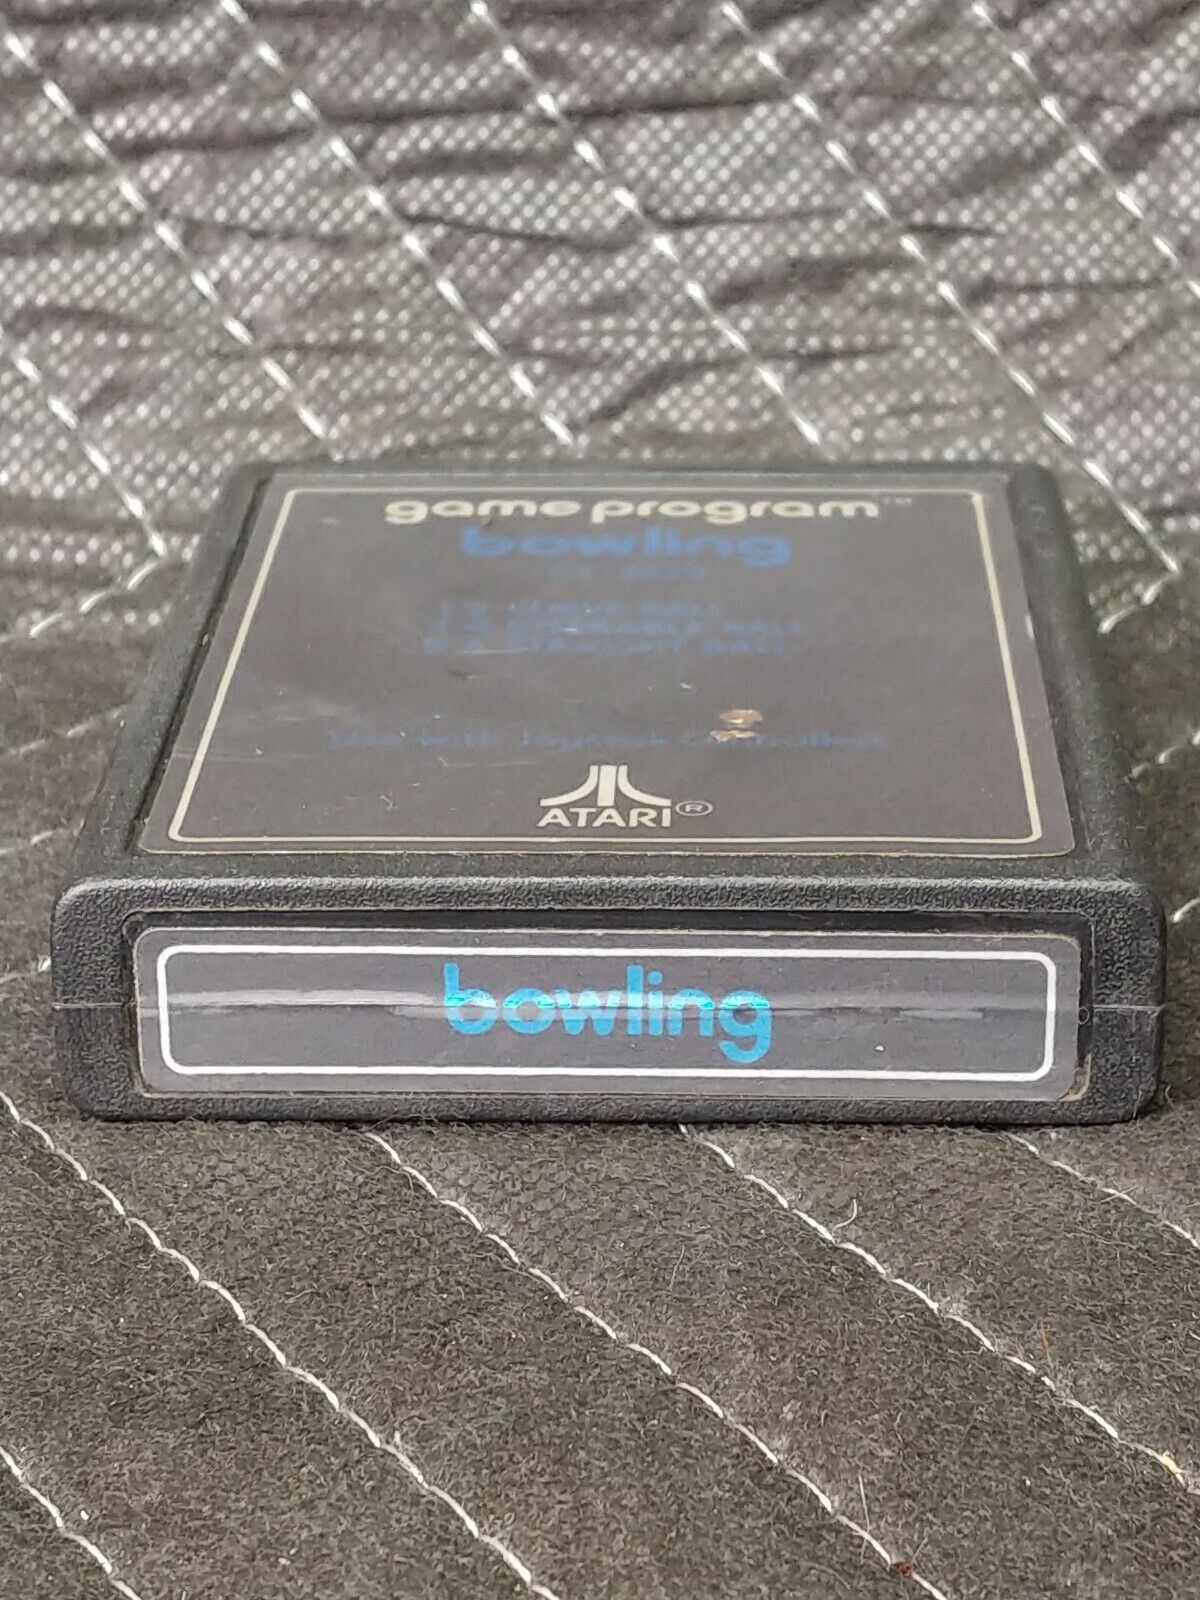 Bowling Atari Game Program Game